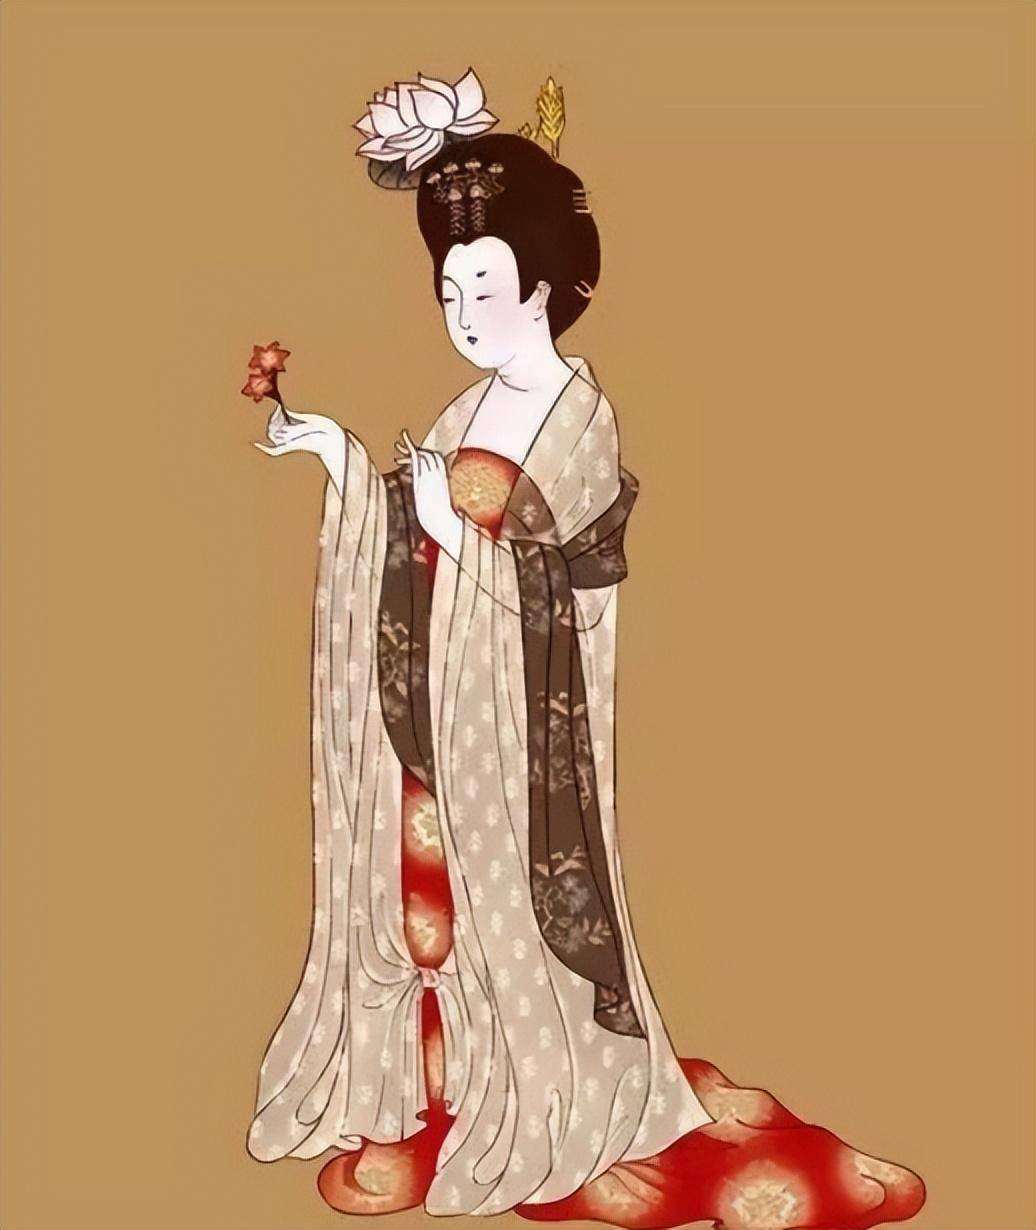 既有传统与时尚,又展现华丽和沉稳,唐朝女装如何做到相得益彰?